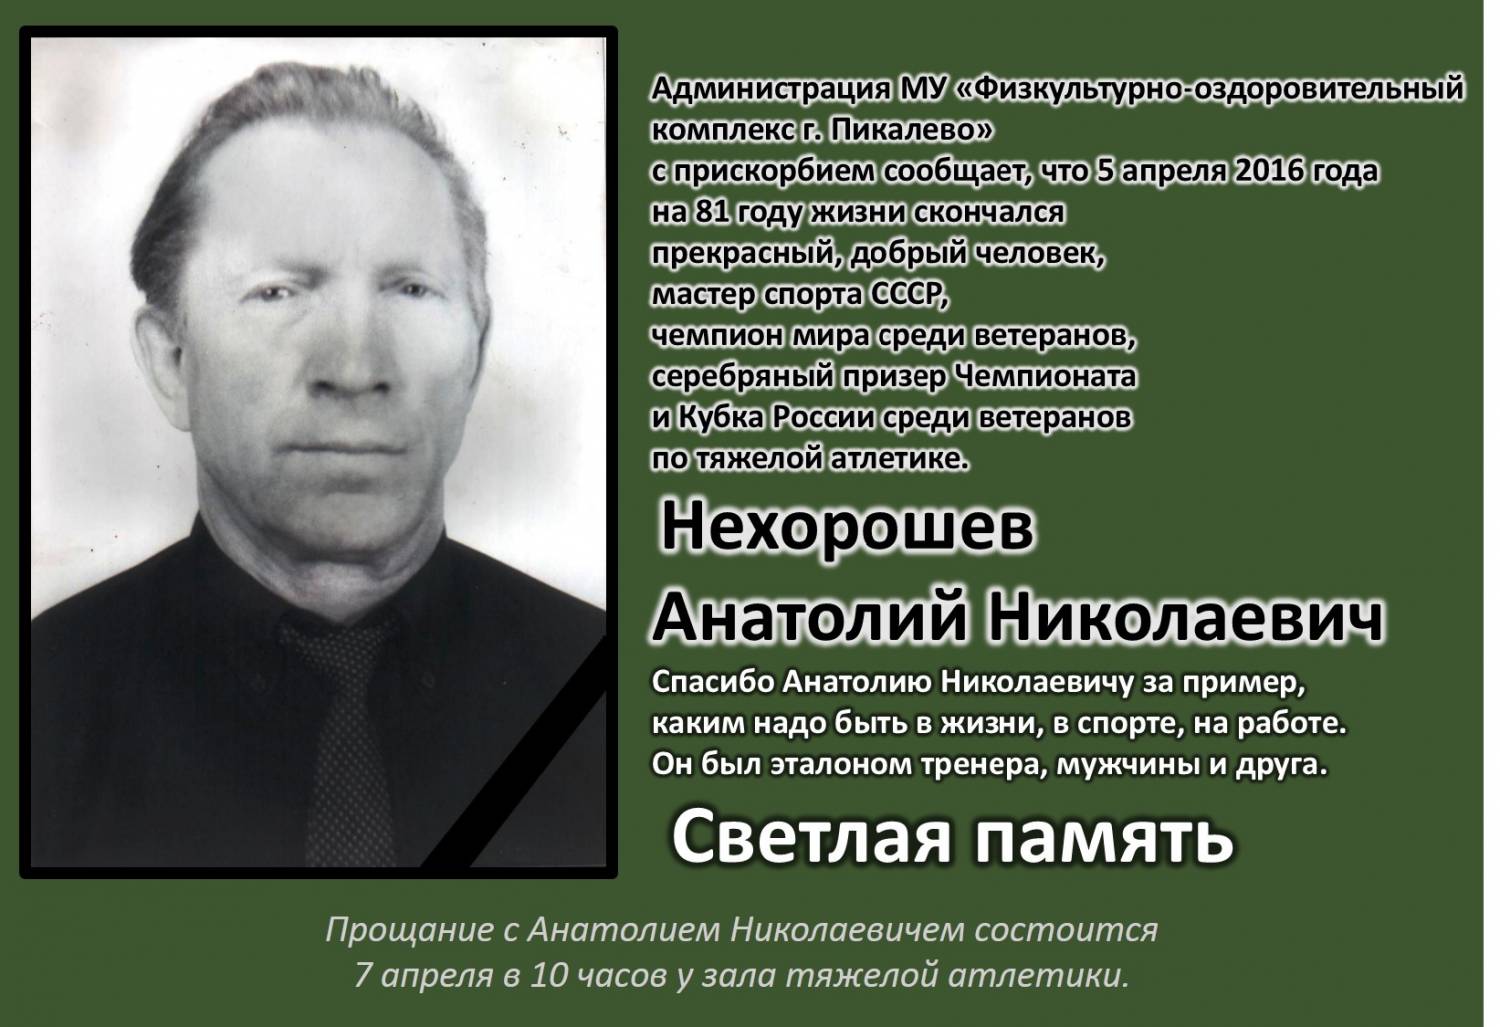 Светлой памяти Анатолия Николаевича Нехорошева.